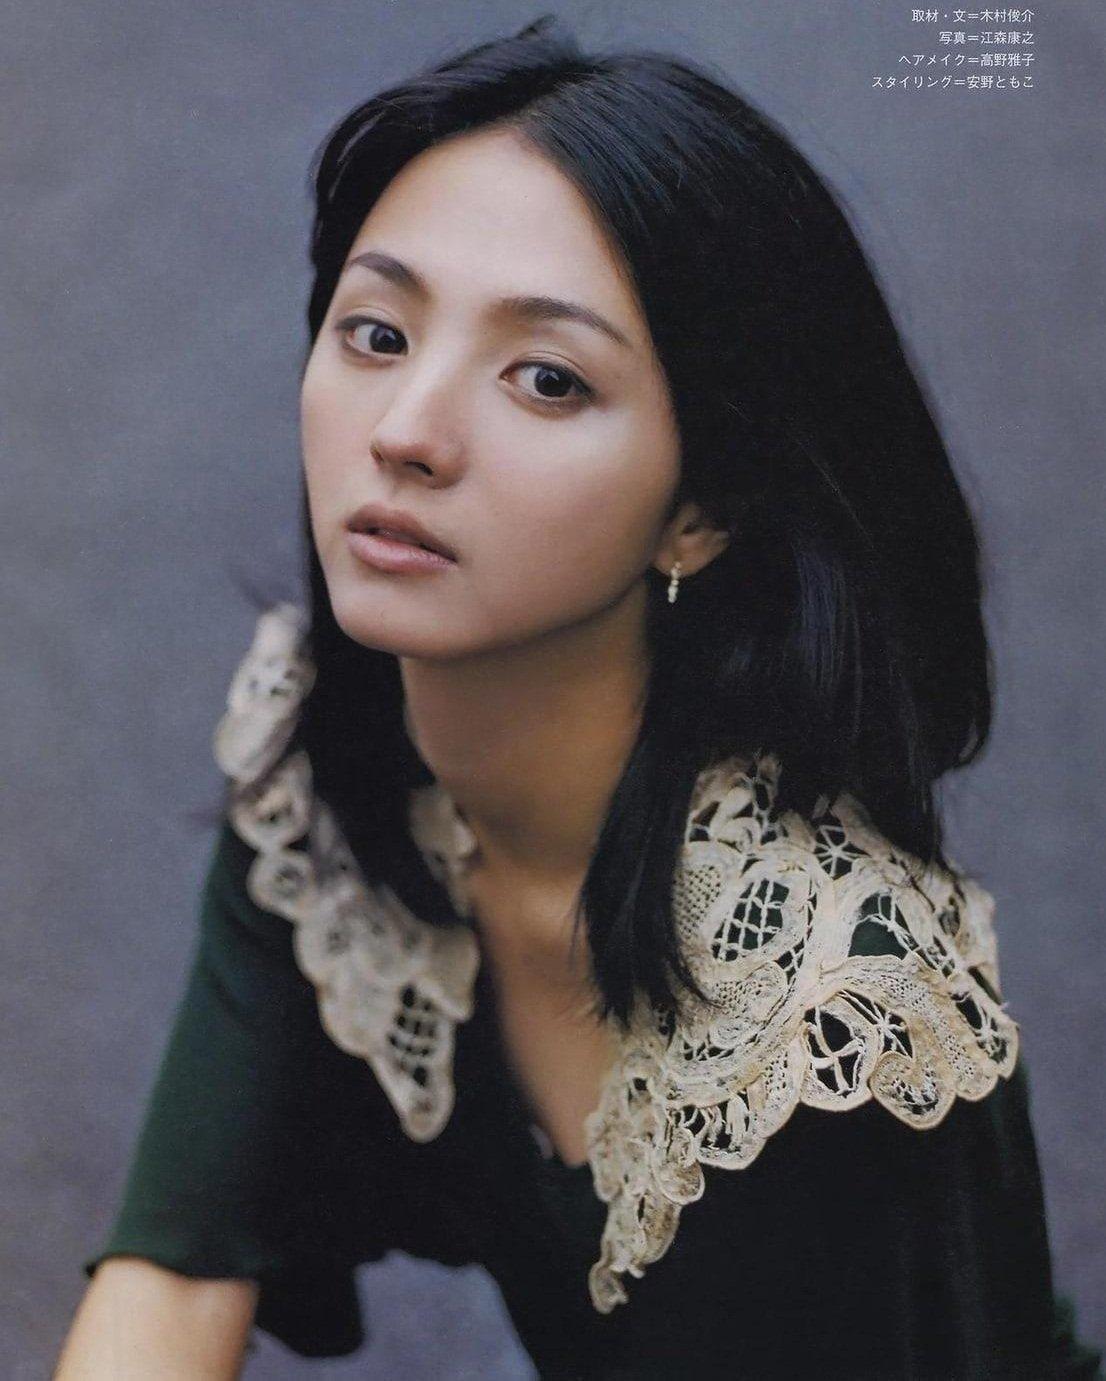 Nữ diễn viên Mitsushima Hikari đứng hạng 19 trong bảng xếp hạng những mỹ nhân Nhật Bản sở hữu khuôn mặt siêu nhỏ nhắn với 127 phiếu bình chọn của người hâm mộ. (Nguồn: Internet)